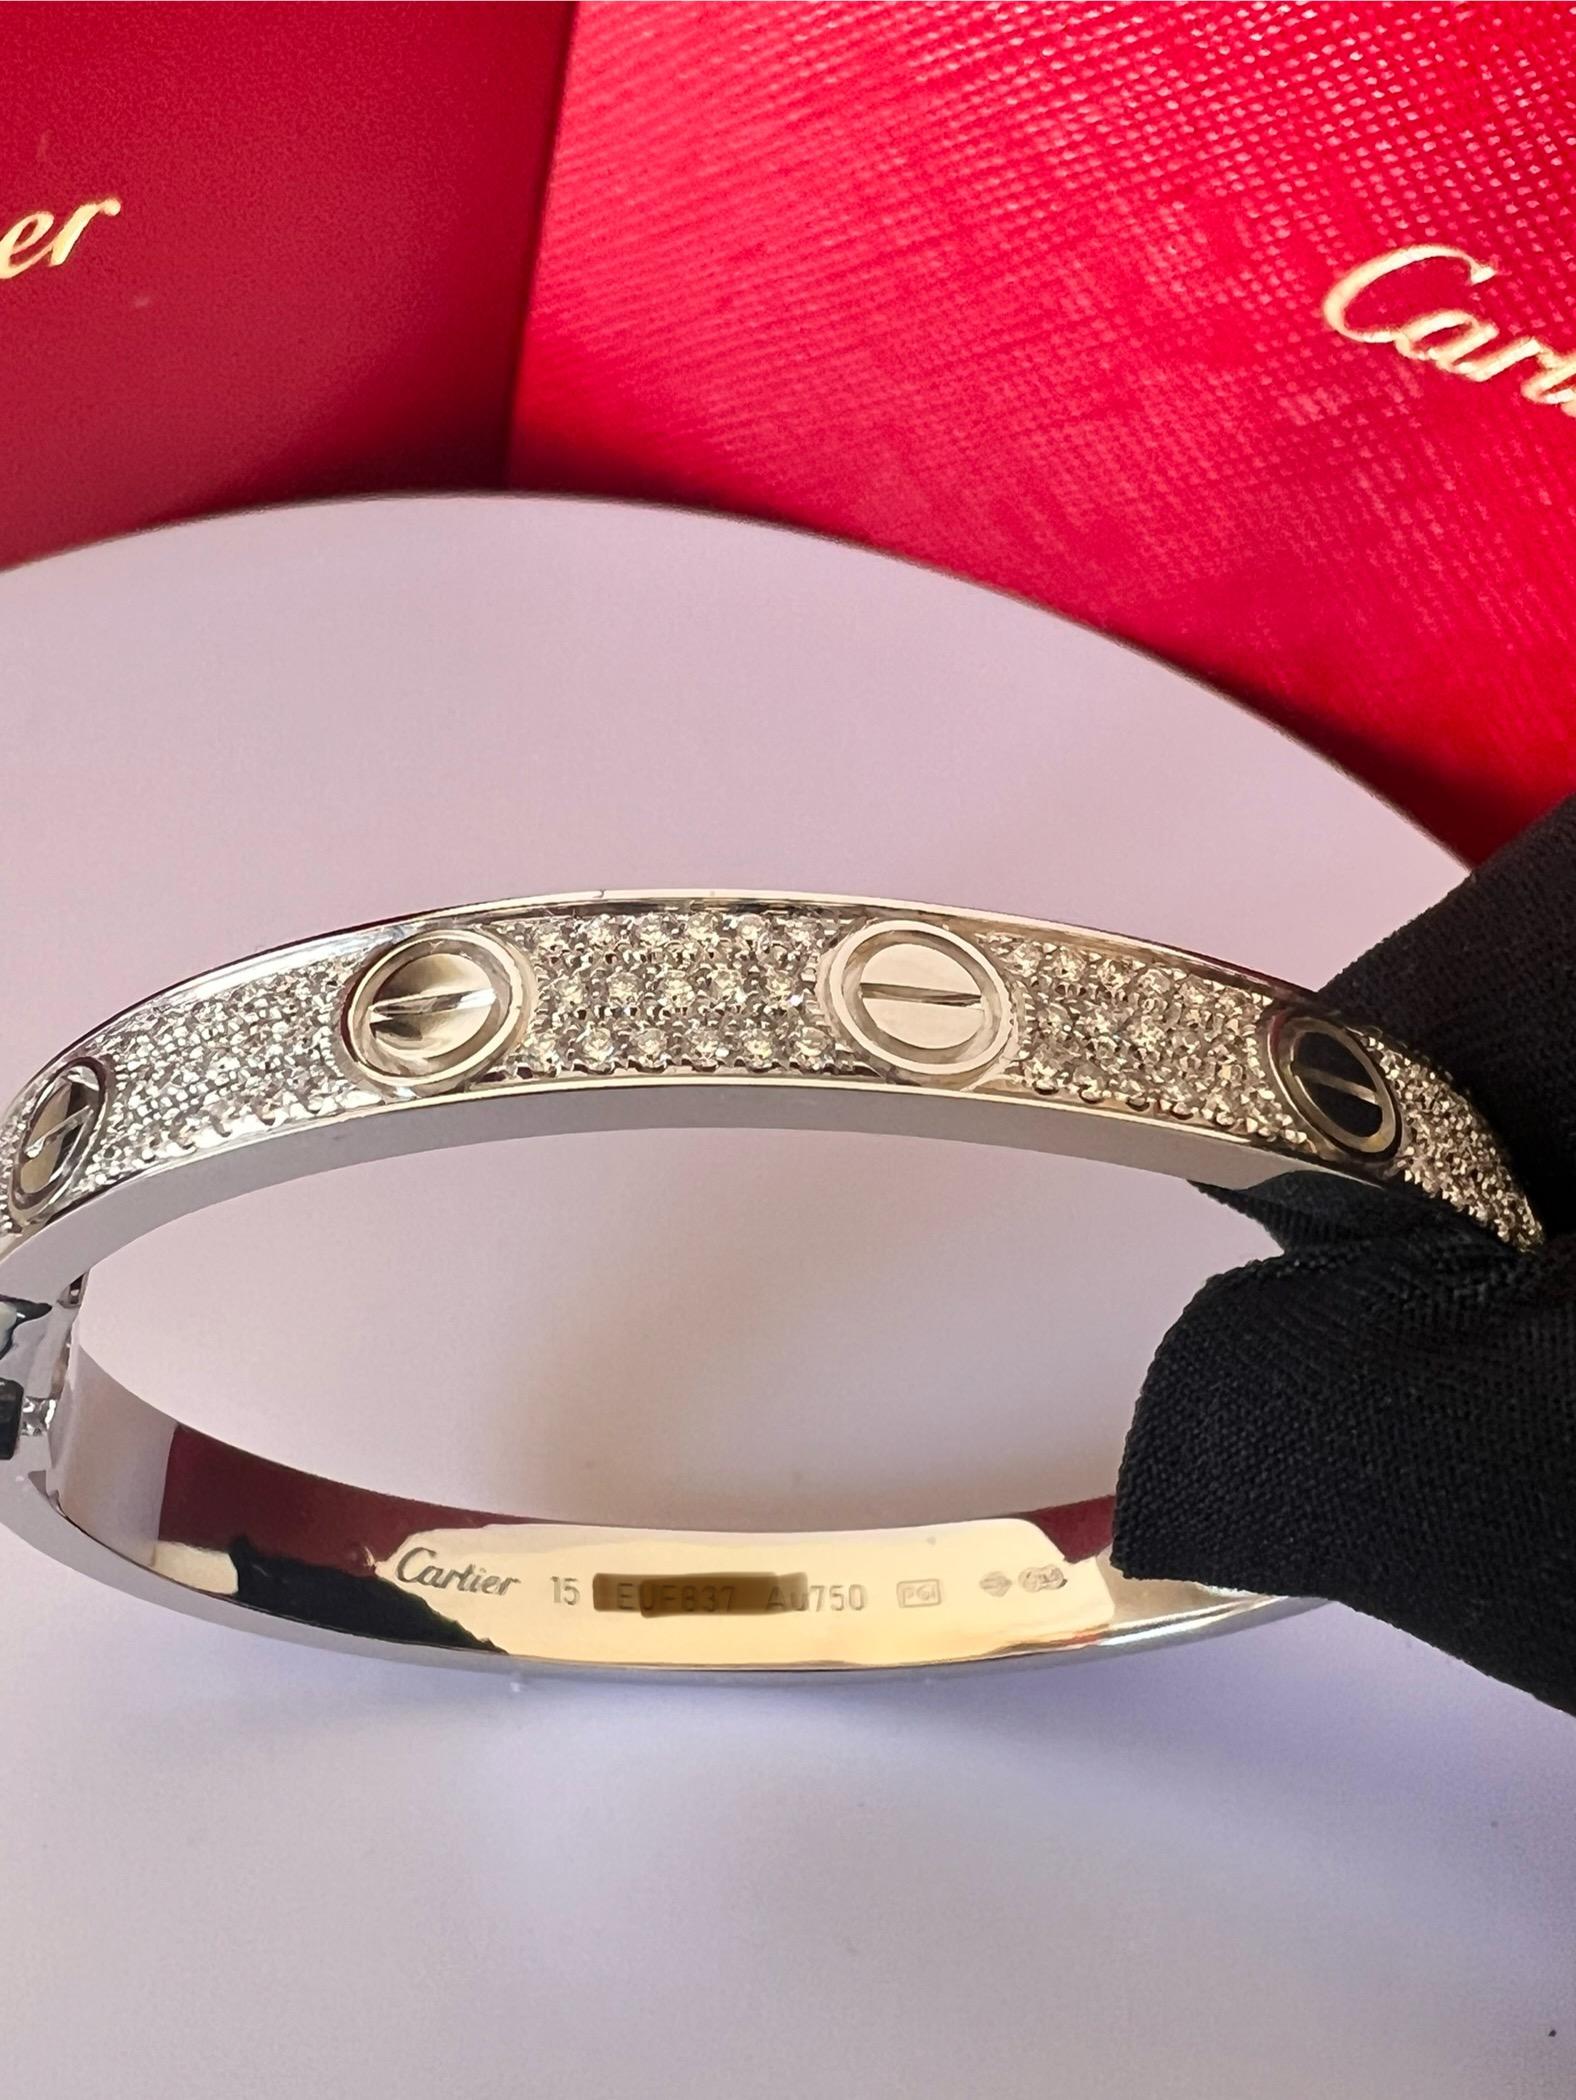 BRACELET D'AMOUR DE CARTIER
Bracelet 'Love' de Cartier en or blanc 18 carats avec vis en diamant et diamants ronds de taille brillant sertis (couleur D-F, pureté VVS).
Signée Cartier, 750, avec numéro de série et poinçons 
Le bracelet est présenté